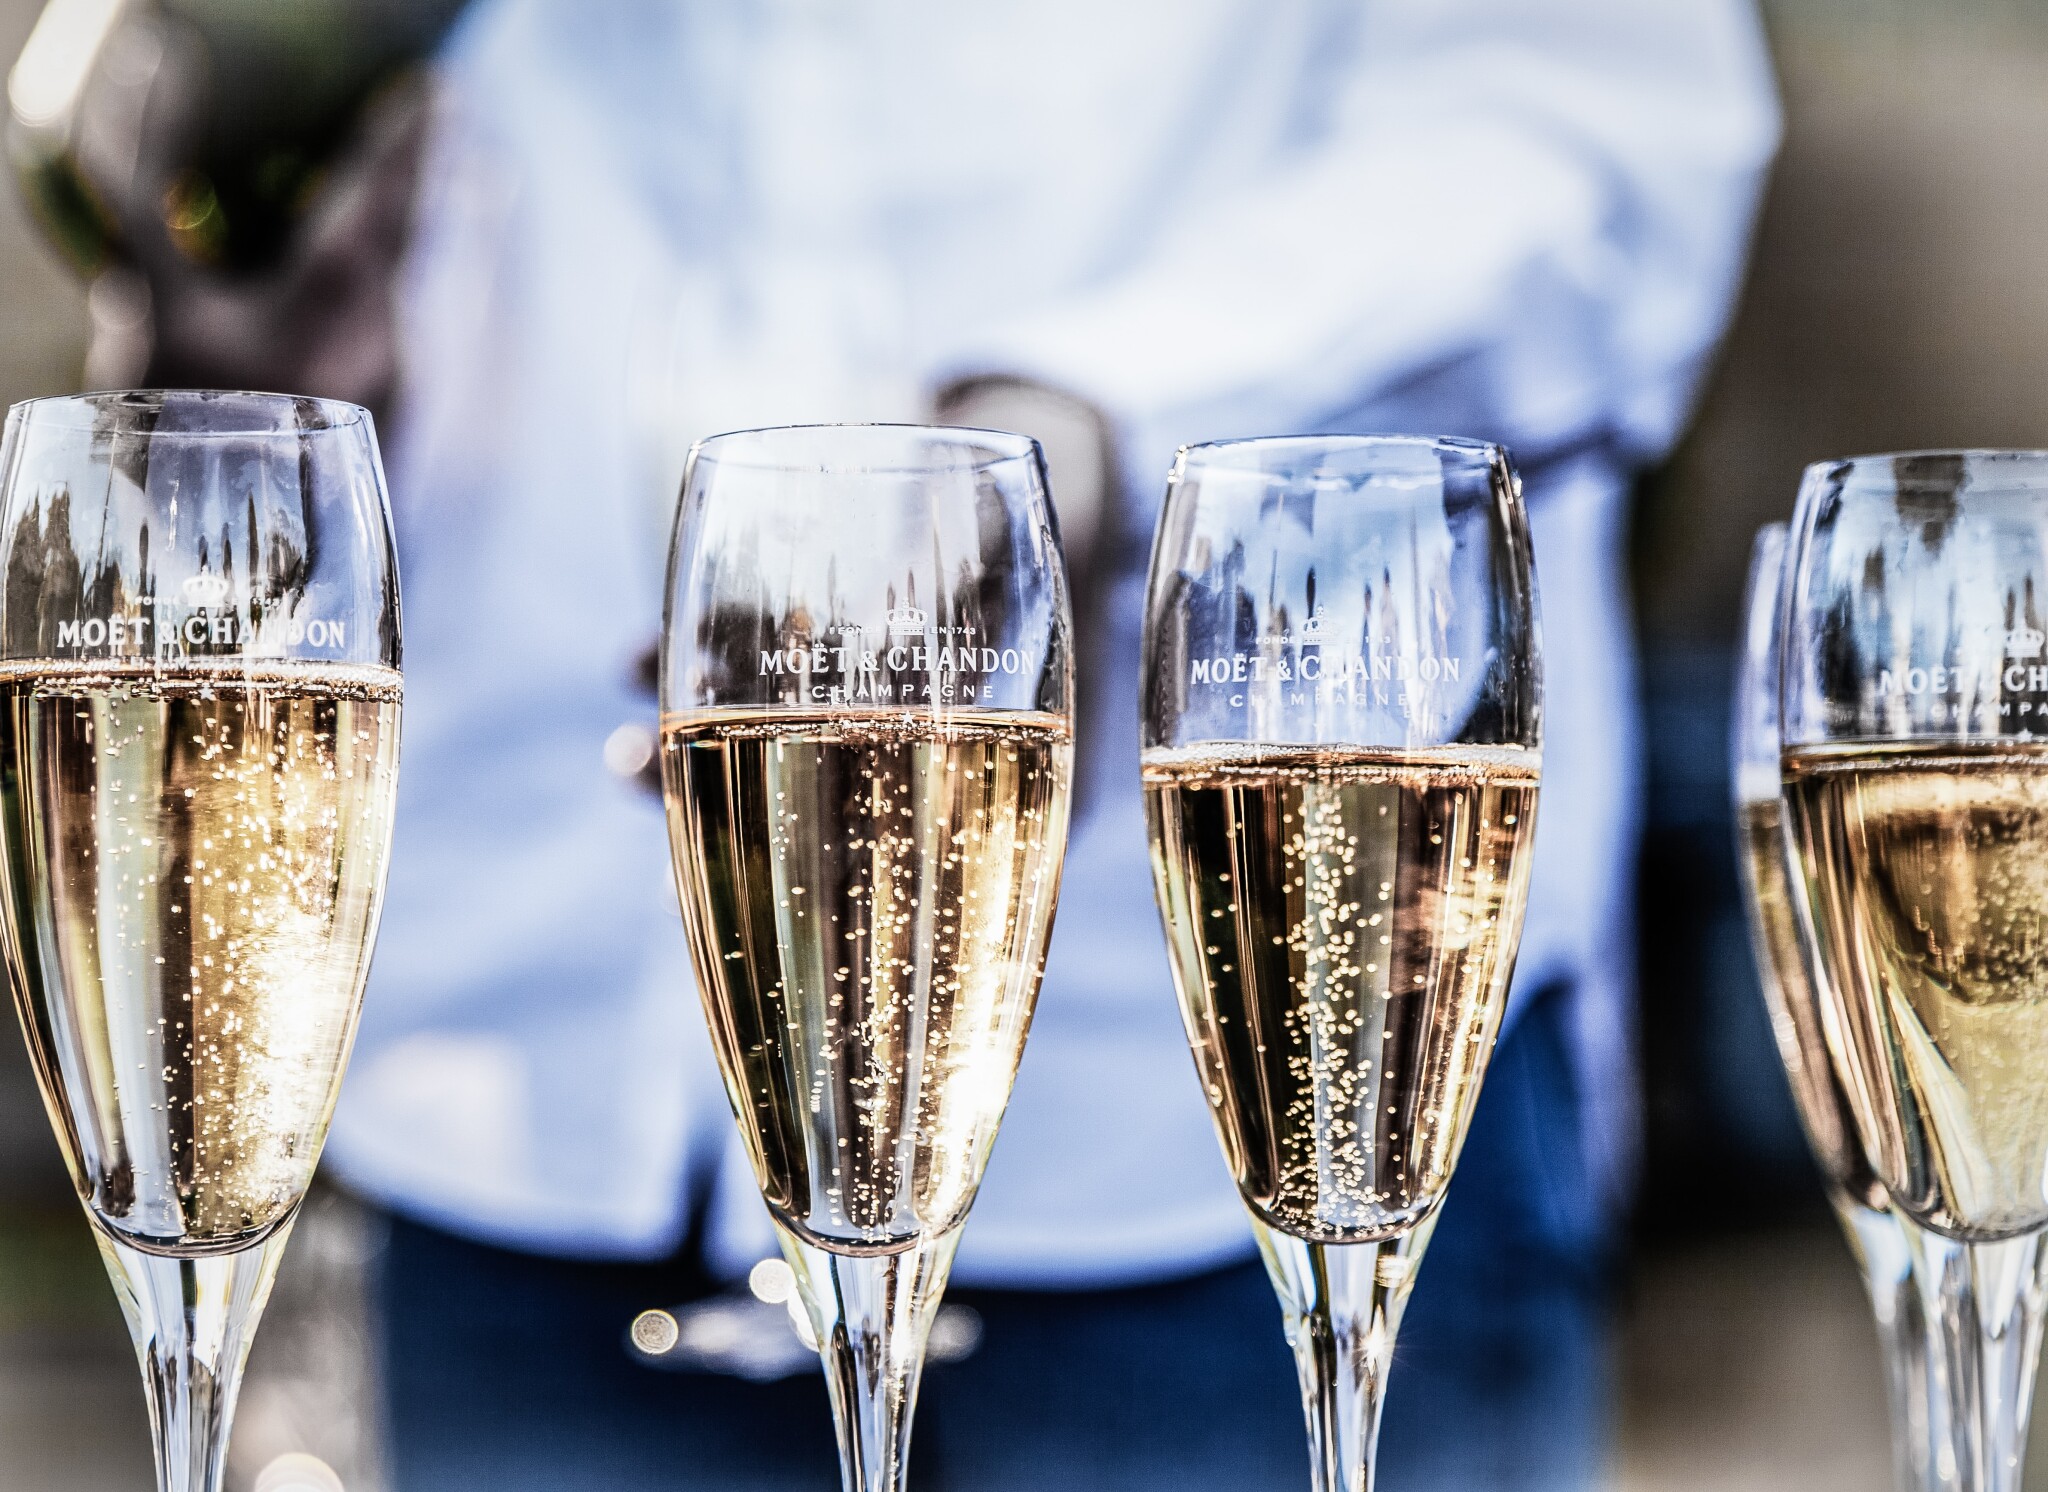 Špatná zpráva pro šampaňské. Francouzští producenti bublinek se dohodli na nižší sklizni